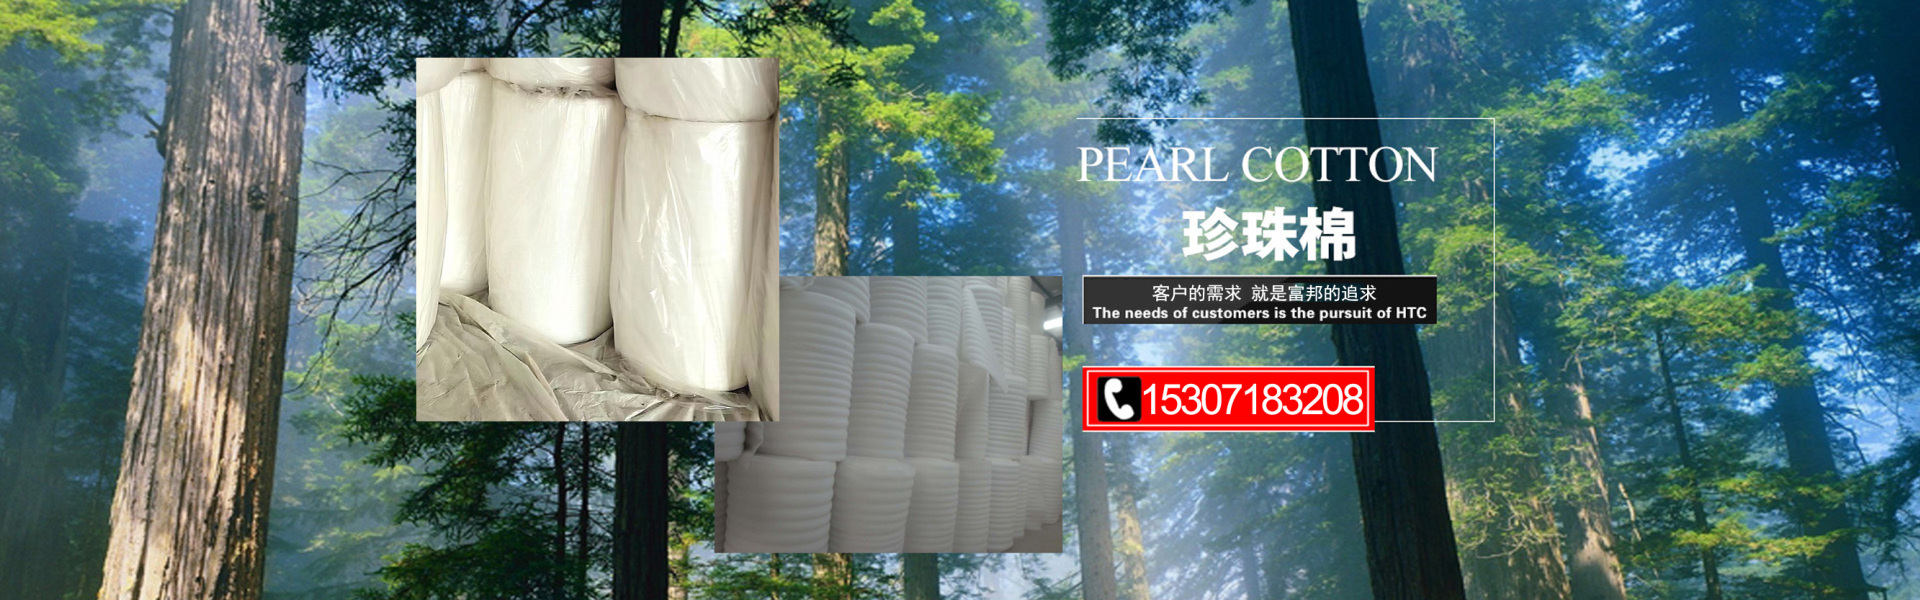 武汉富邦包装有限公司-珍珠棉样品